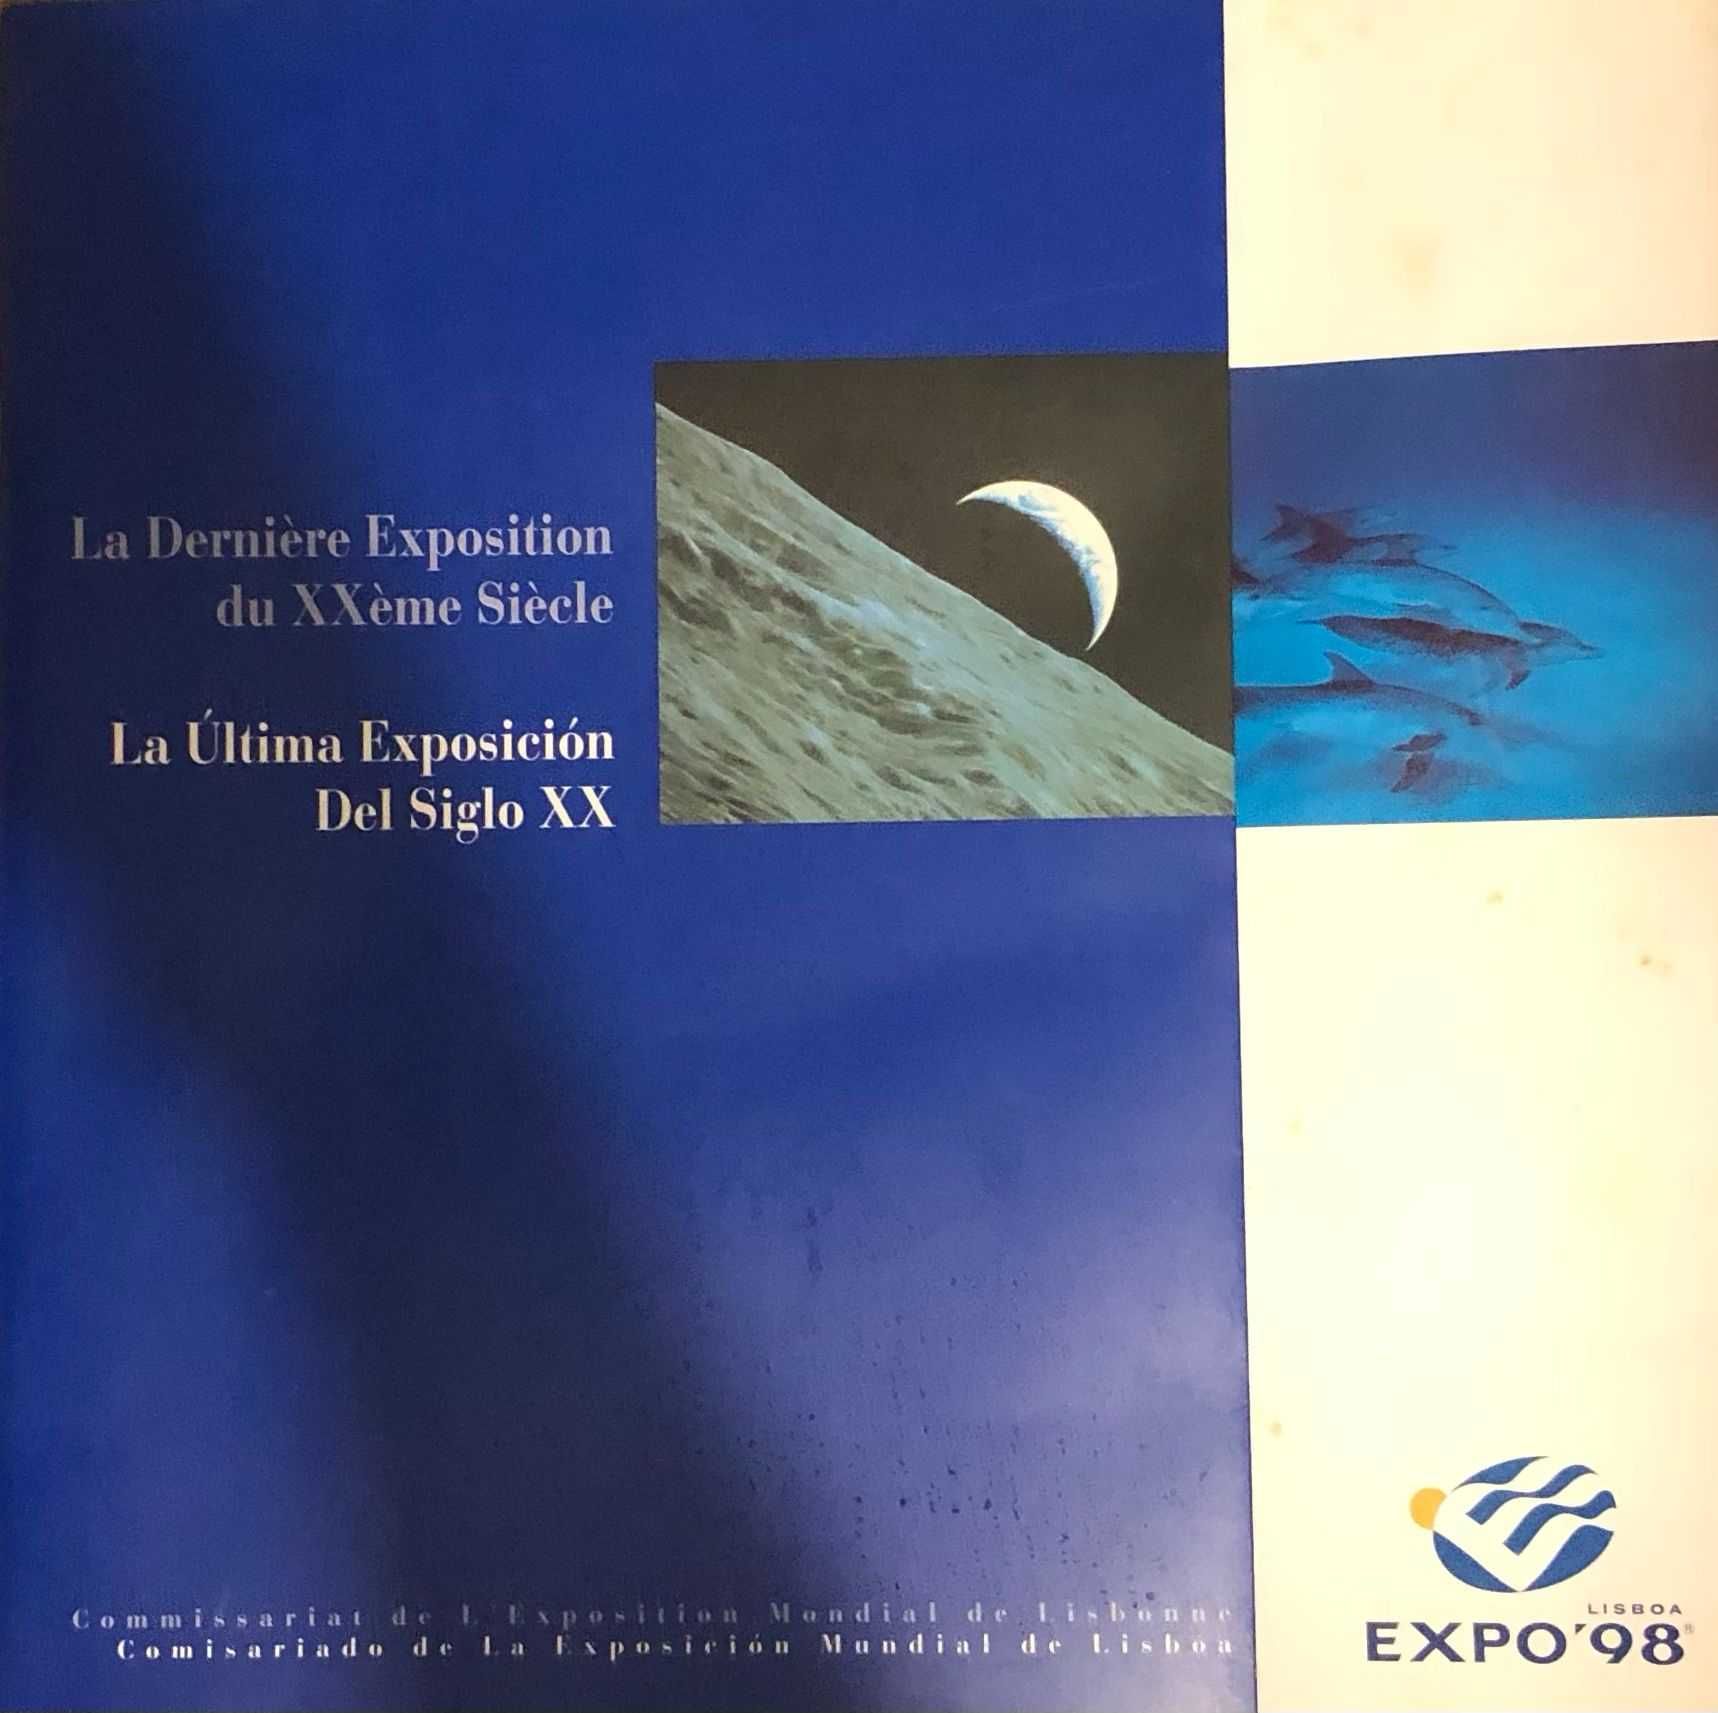 Brochura Expo 98 La Dernière Exposition du XXème Siècle